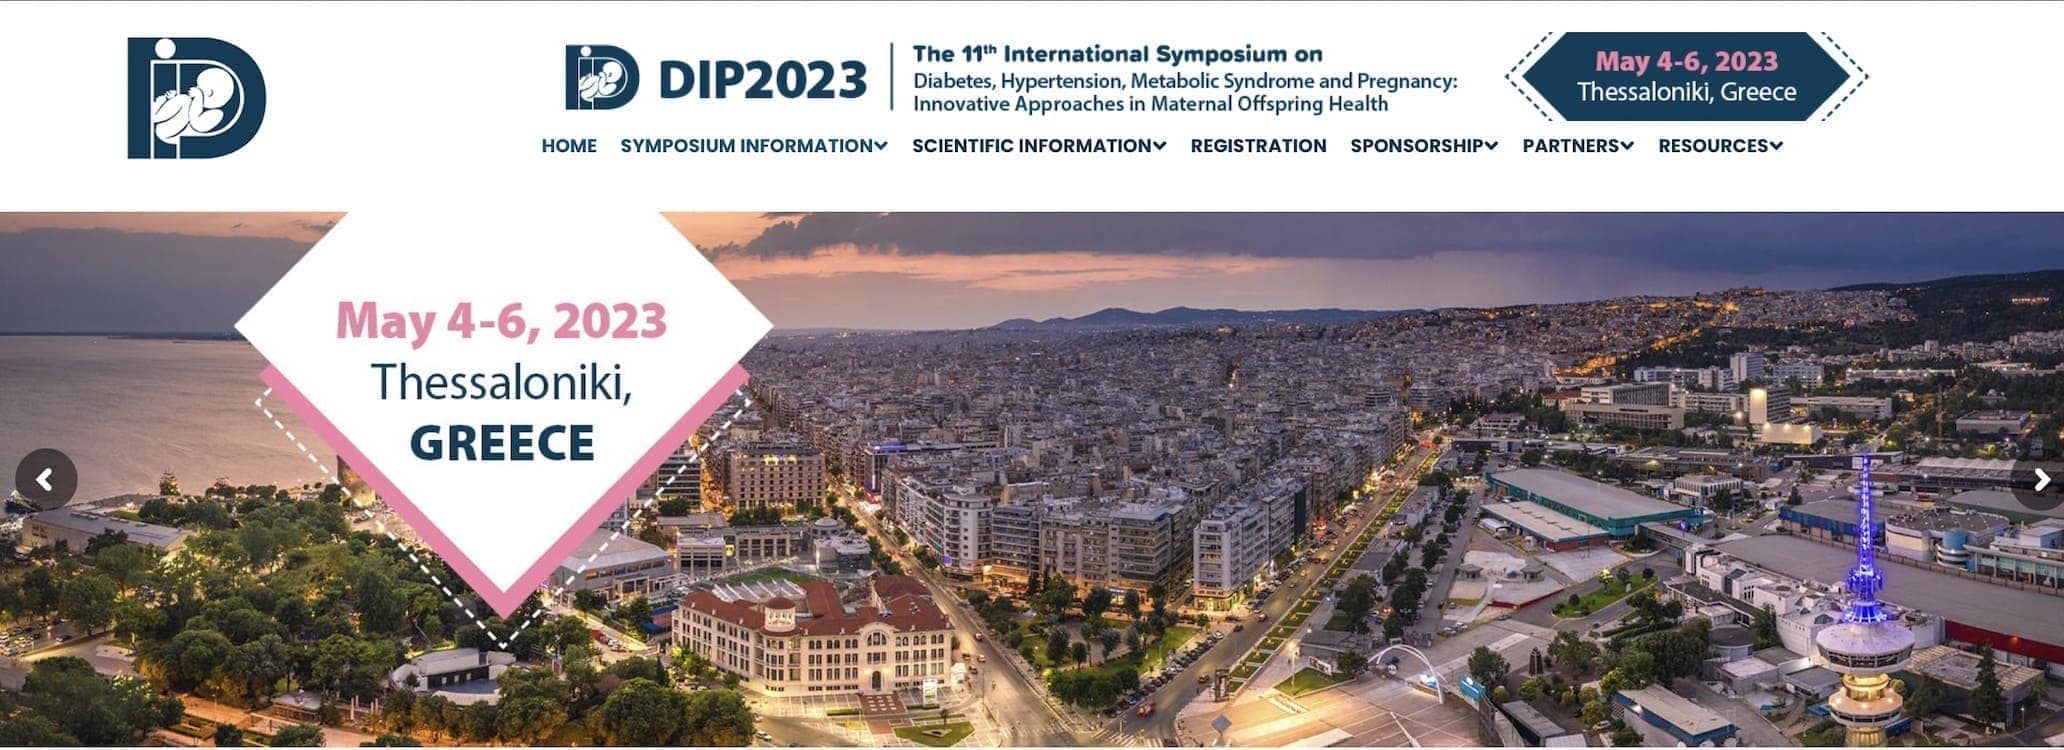 ประชาสัมพันธ์งานประชุม 11th International Symposium on Diabetes, Hypertension, Metabolic Syndrome and Pregnancy